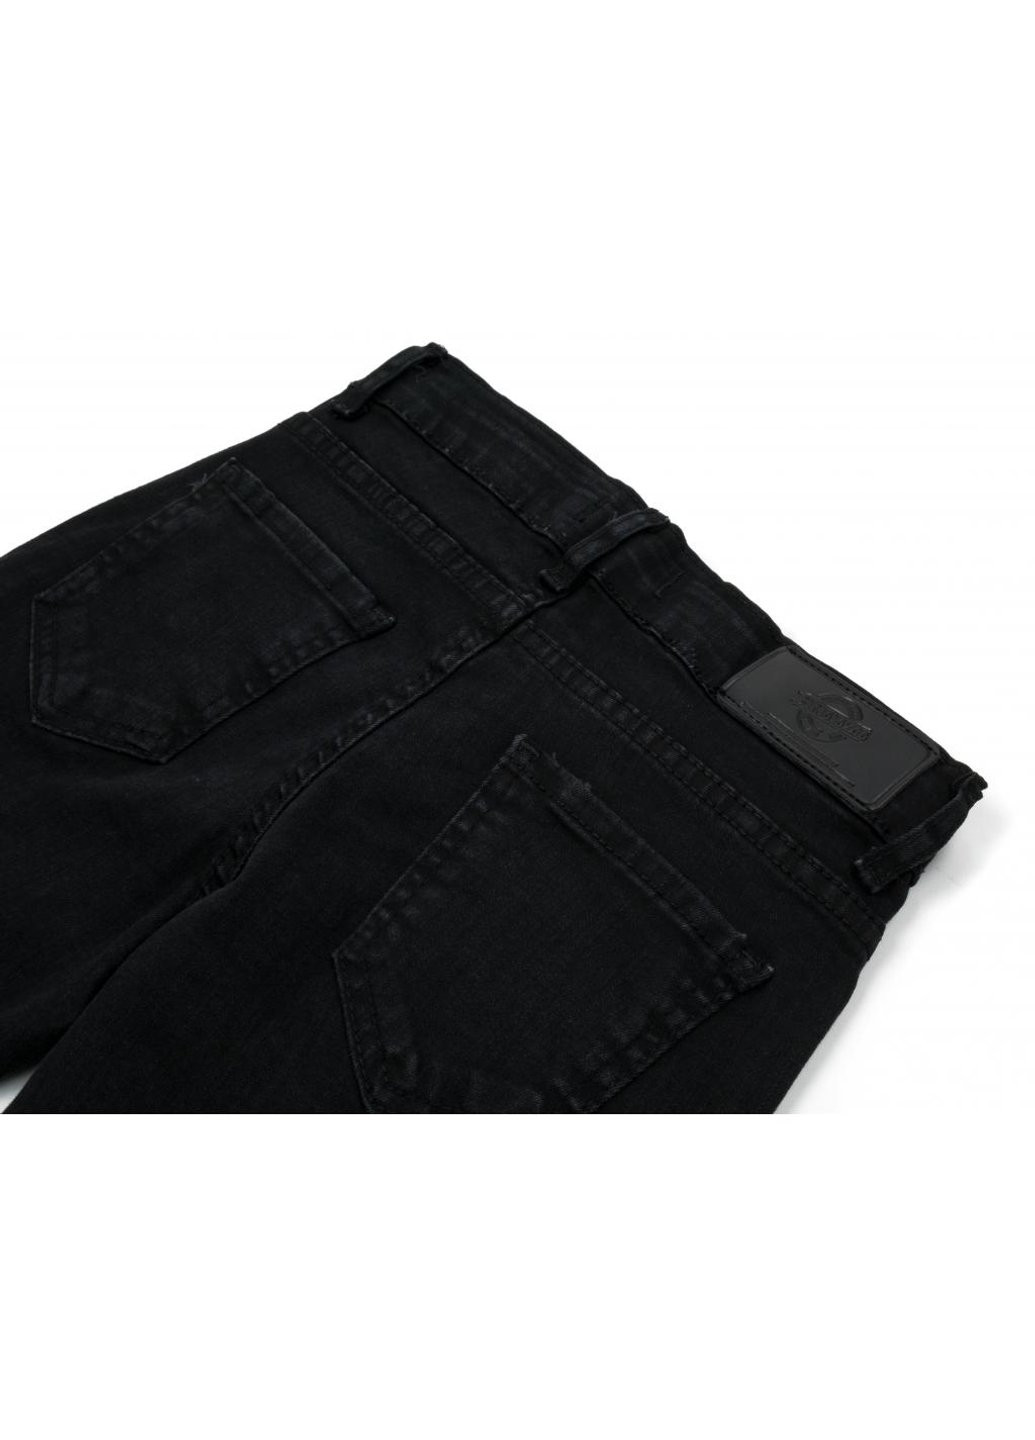 Черные демисезонные джинсы с дырками (20214-164g-black) Breeze